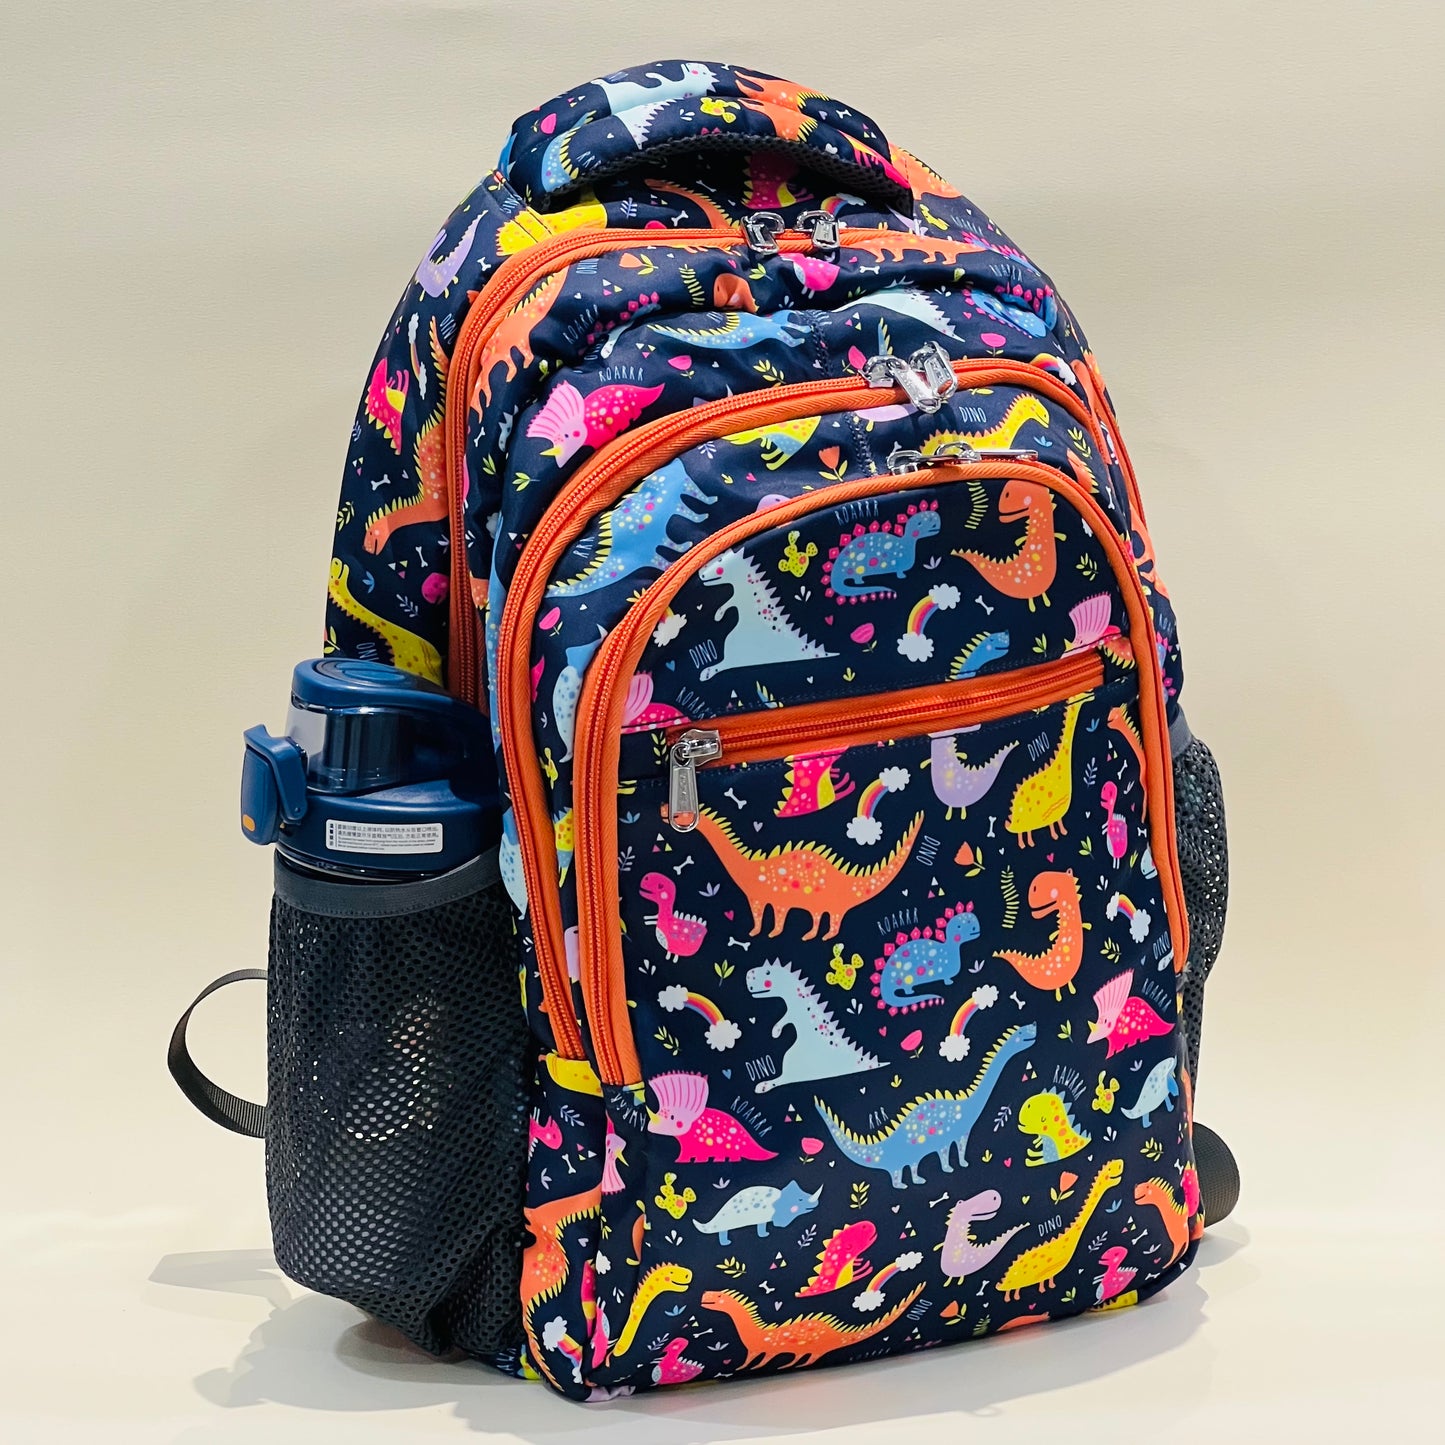 16” Premium School Bags